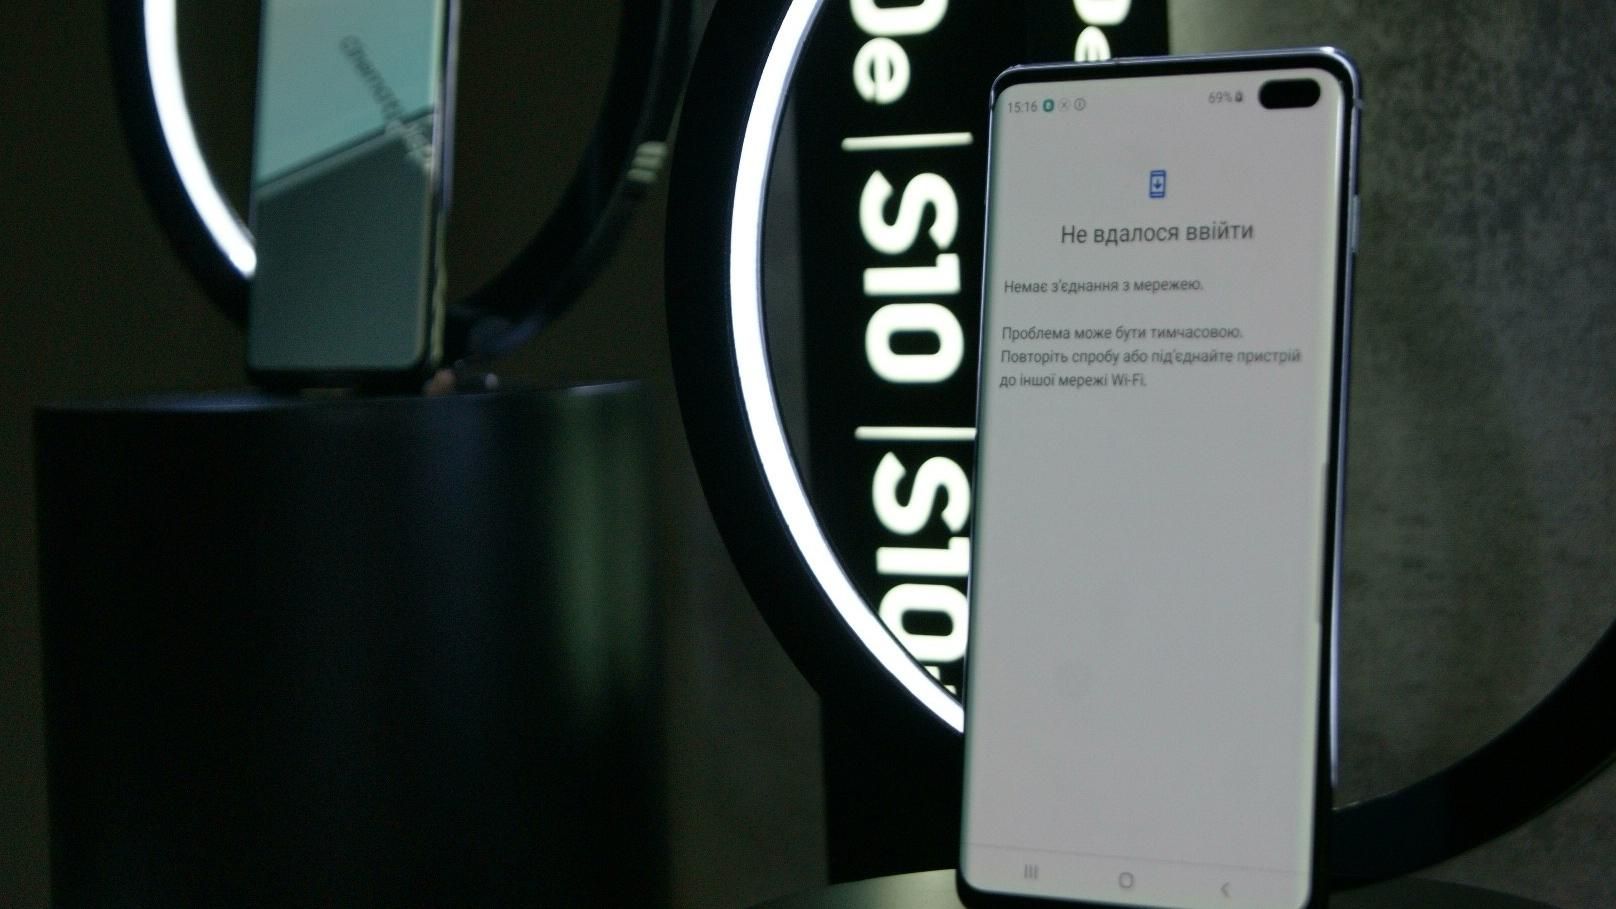 Ненадежная защита: Samsung Galaxy S10 принял фото на другом смартфоне за владельца